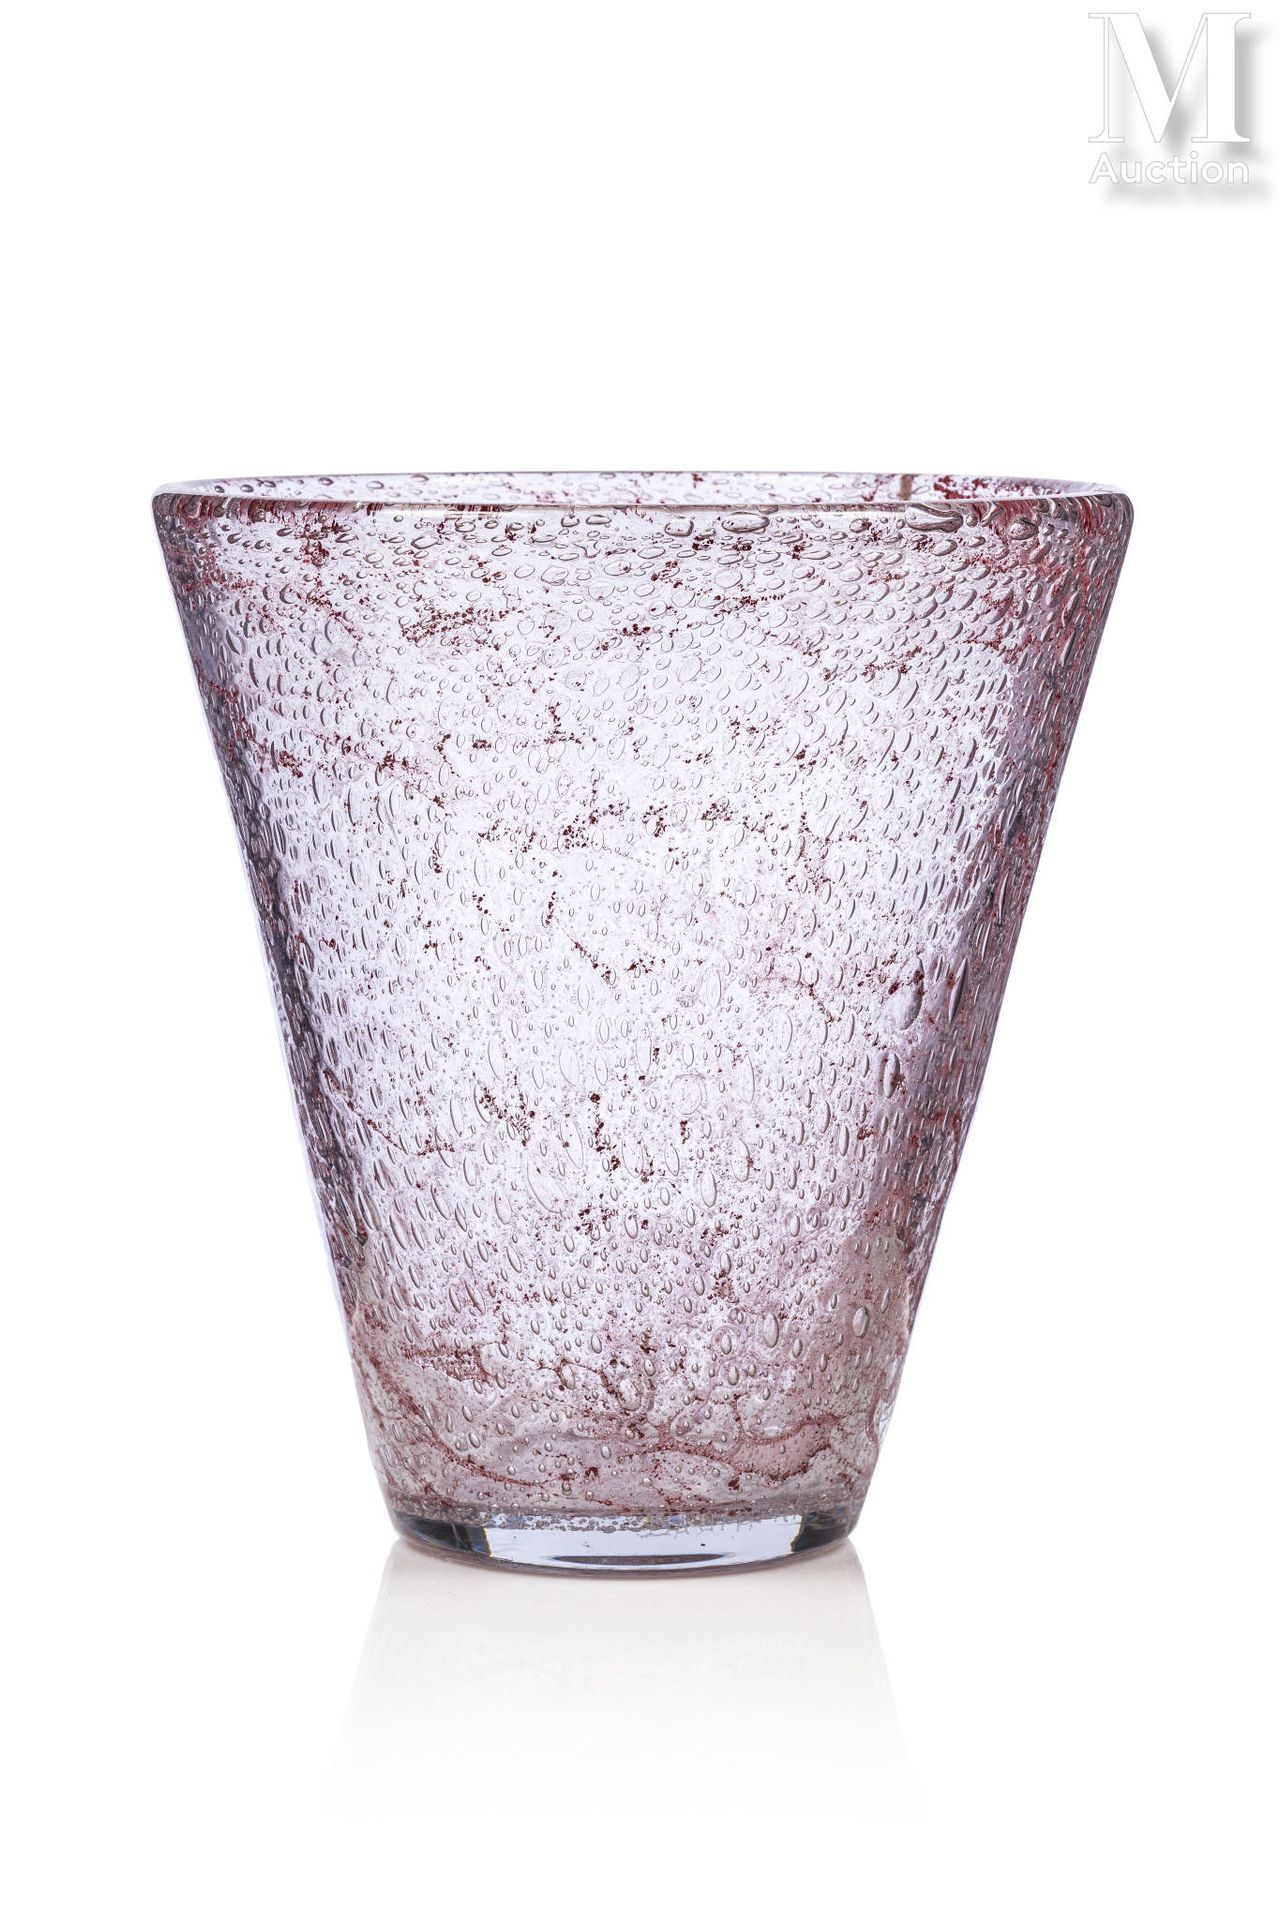 DAUM - Nancy FRANCE Un vaso di vetro a bolle denso, decorato con polveri rosso-r&hellip;